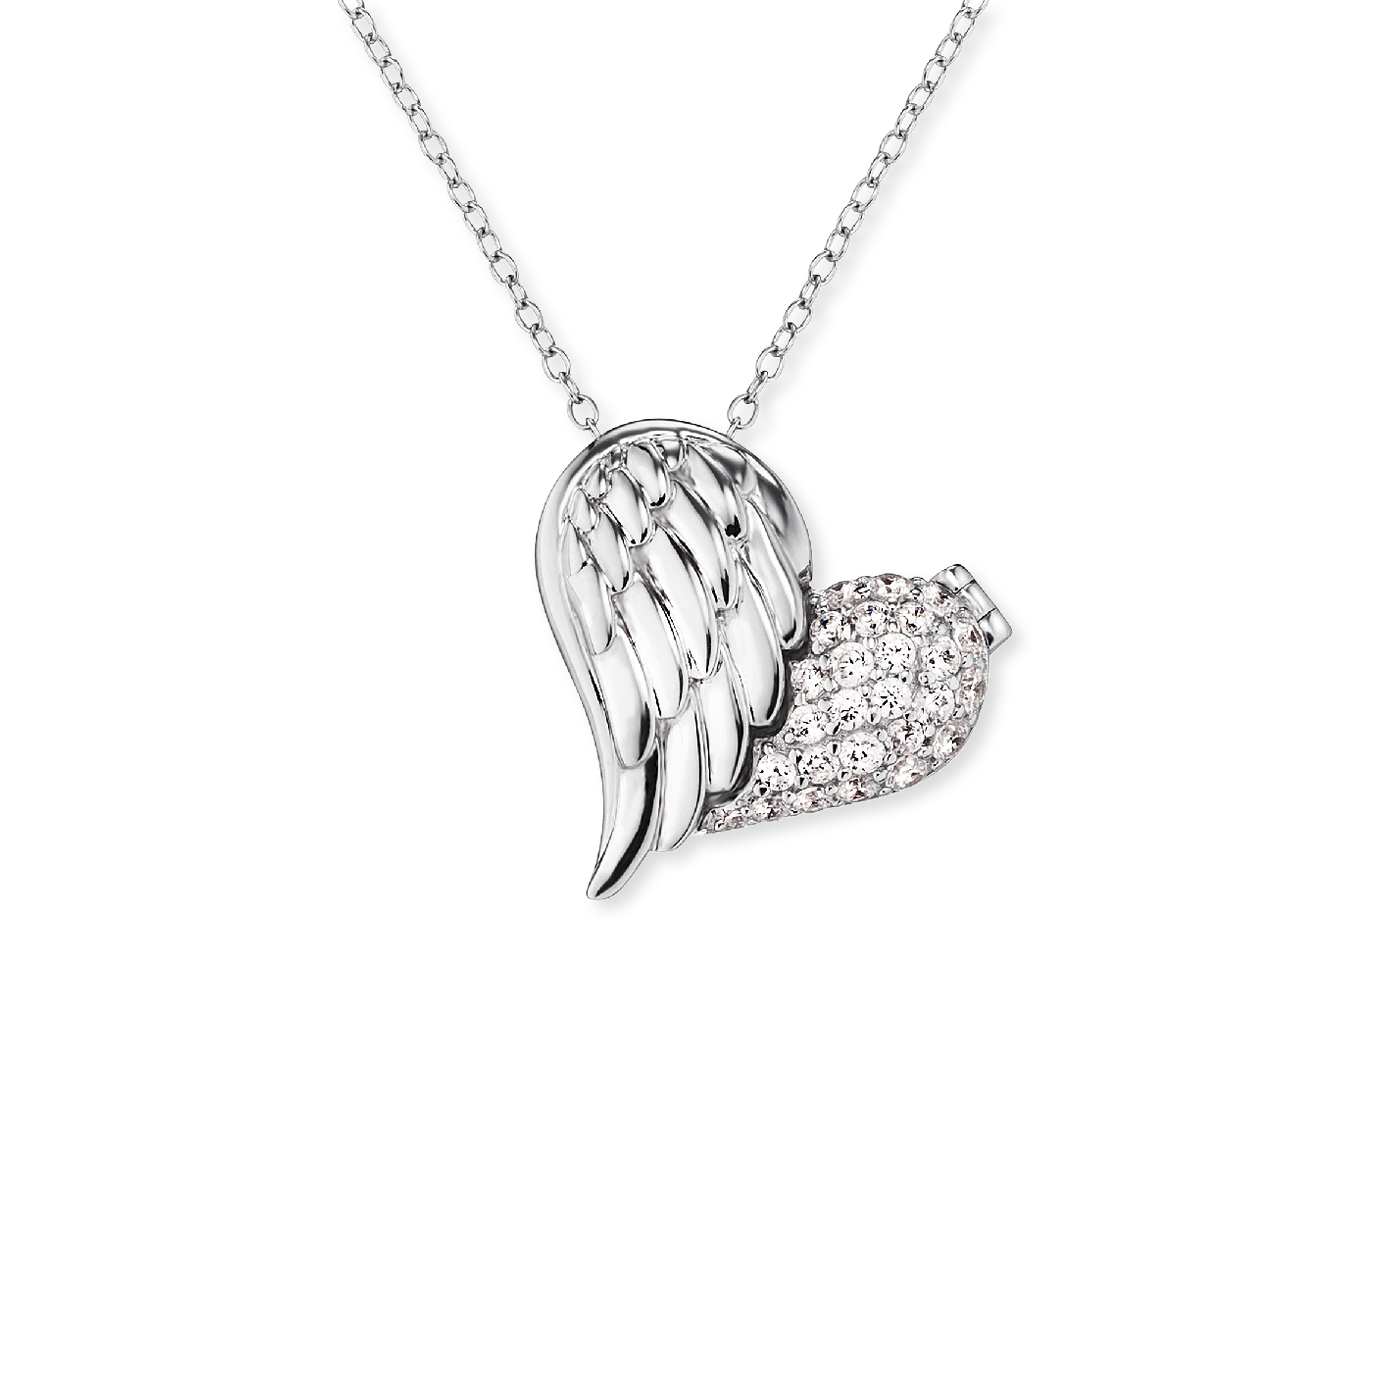 Engelsrufer Liebe Schenken Necklace 925 Silver Zirconia